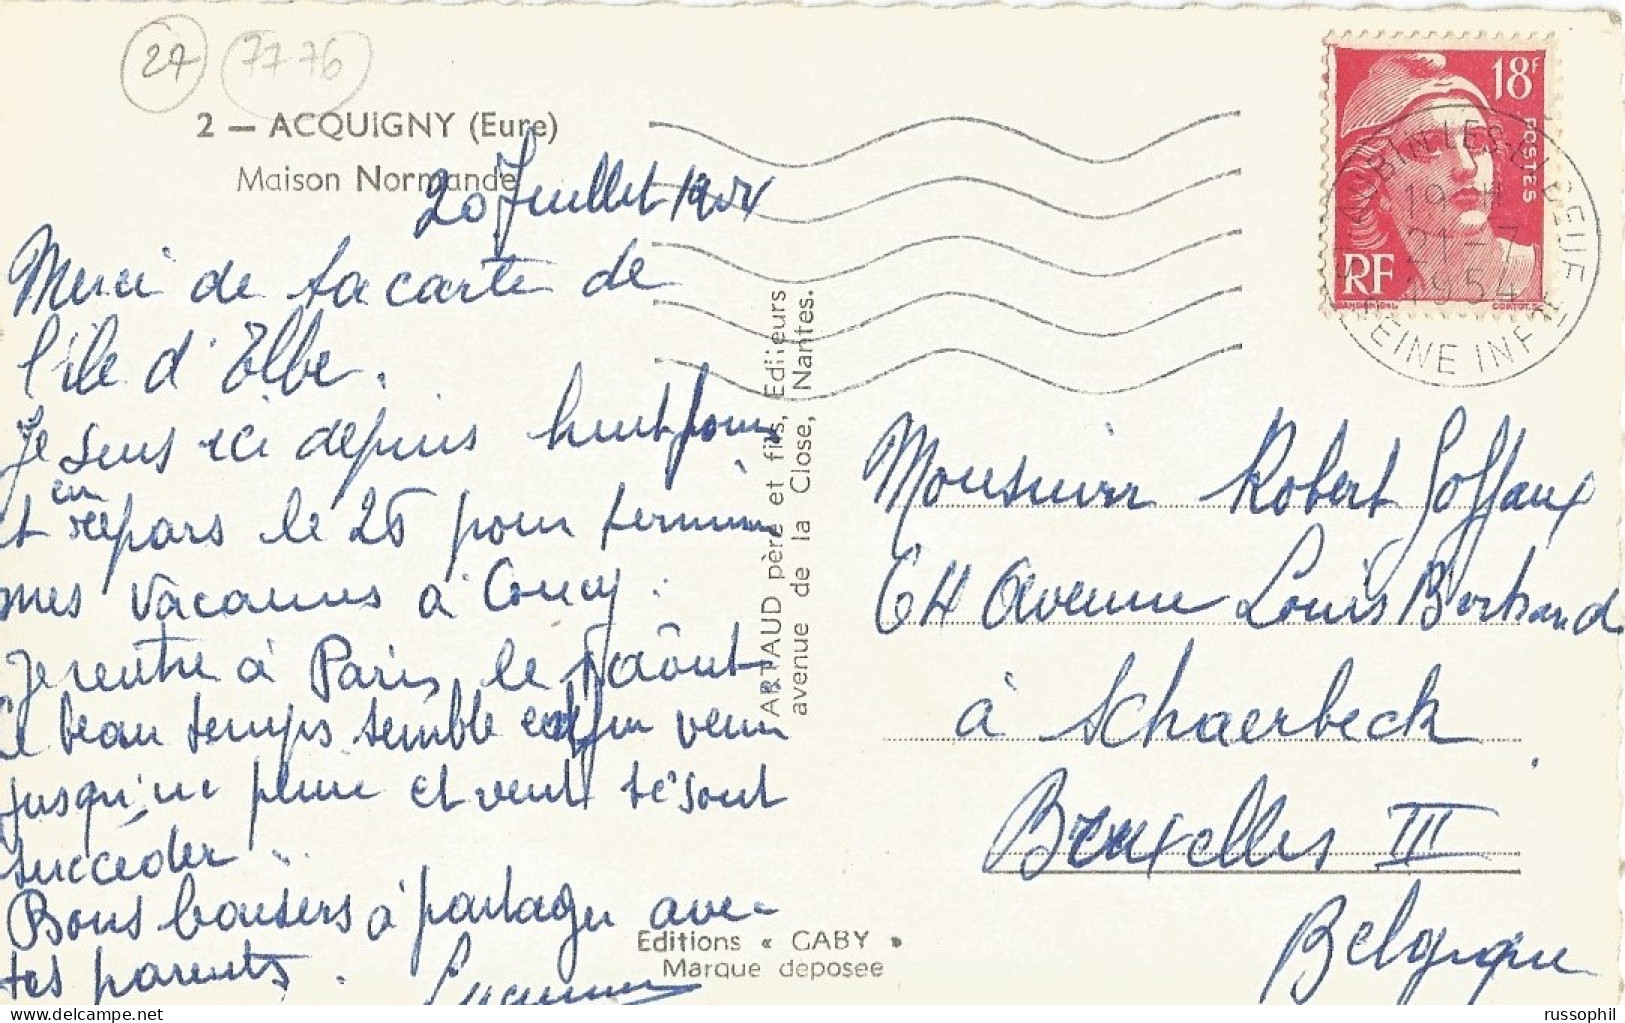 FRANCE - 27 - ACQUIGNY (EURE) - MAISON NORMANDE - ED. GABY REF #2 - 1954 - Acquigny